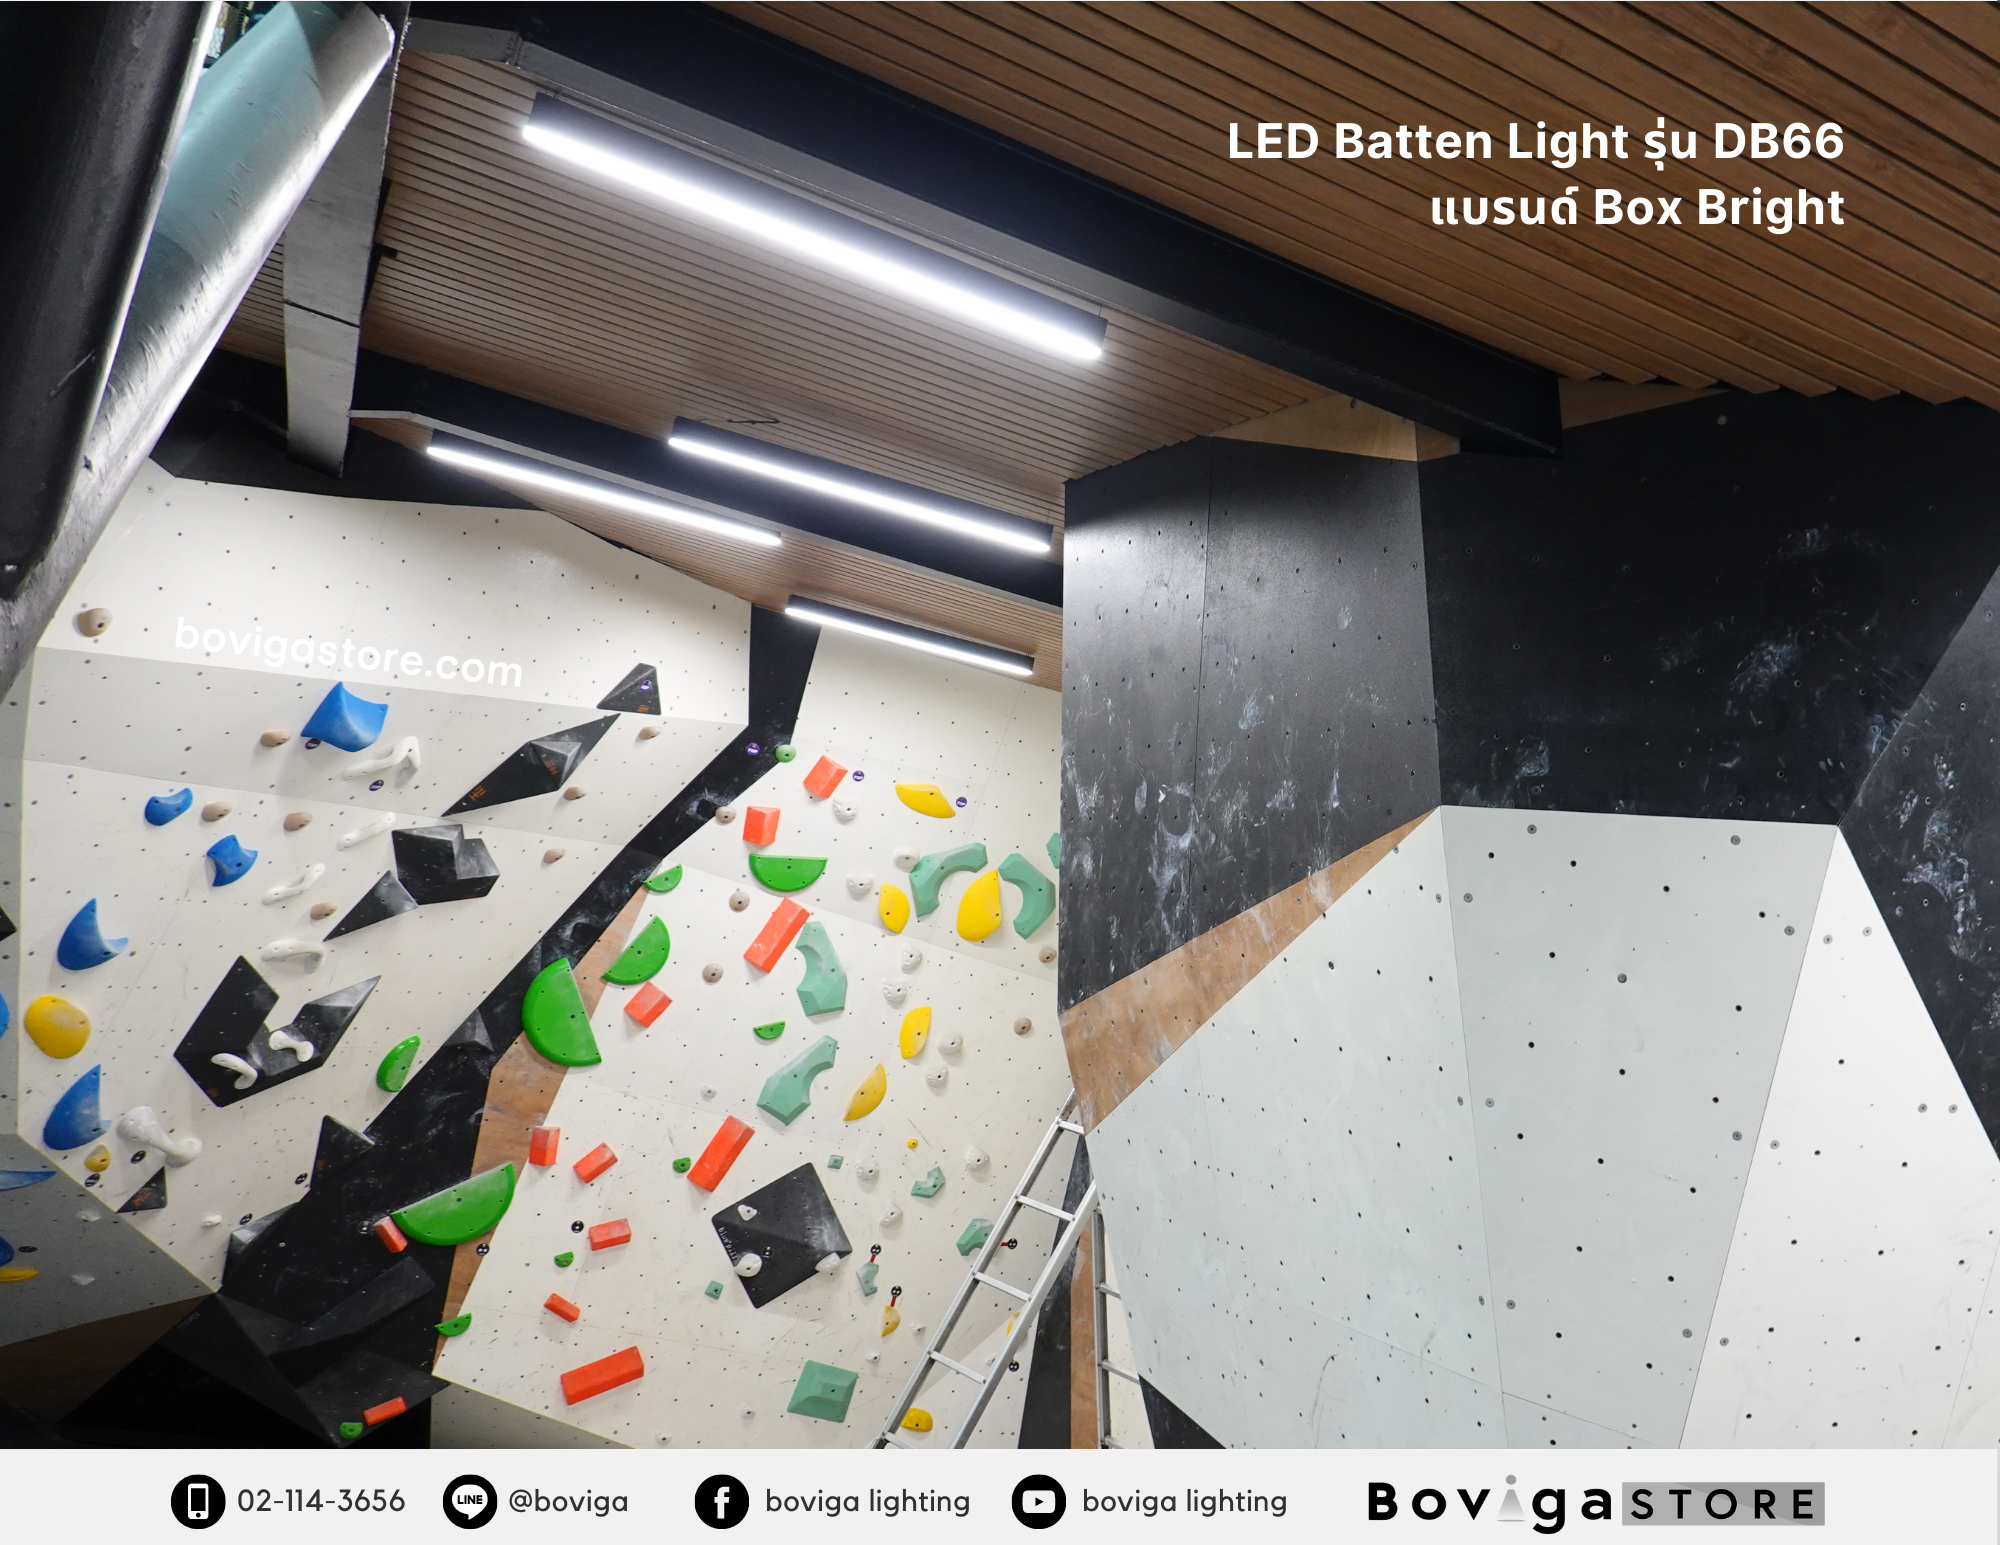 โคมไฟ LED Batten Light รุ่น DB66 แบรนด์ Box Bright ที่ Urban Playground Rock Climbing